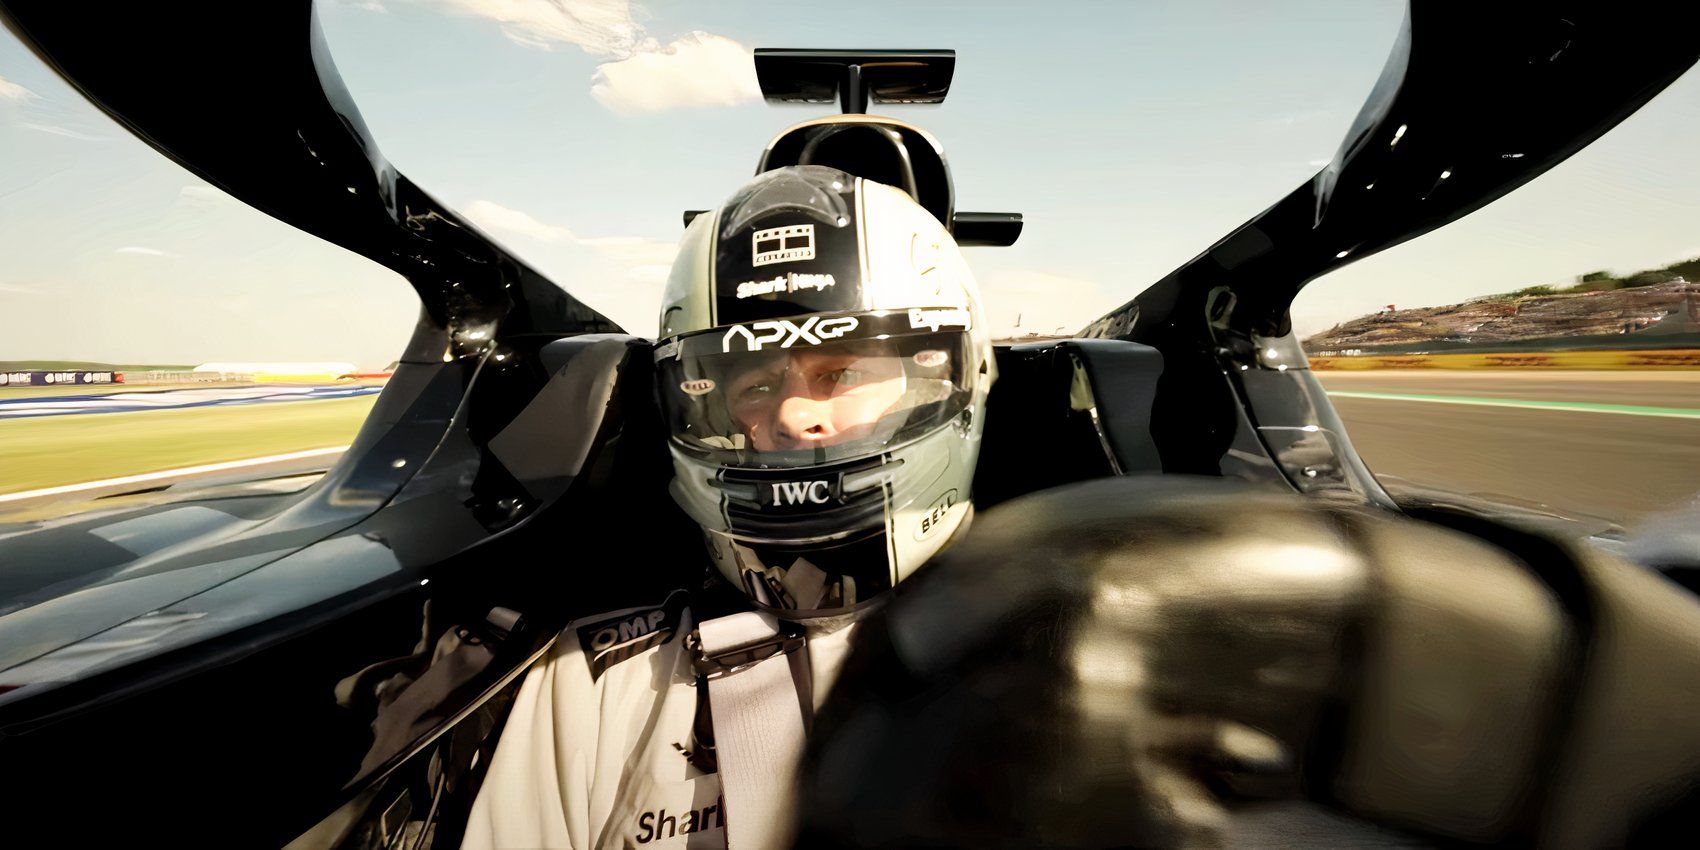 El tráiler de F1 muestra un primer vistazo visualmente impactante y emocionante a la nueva película de carreras de Brad Pitt